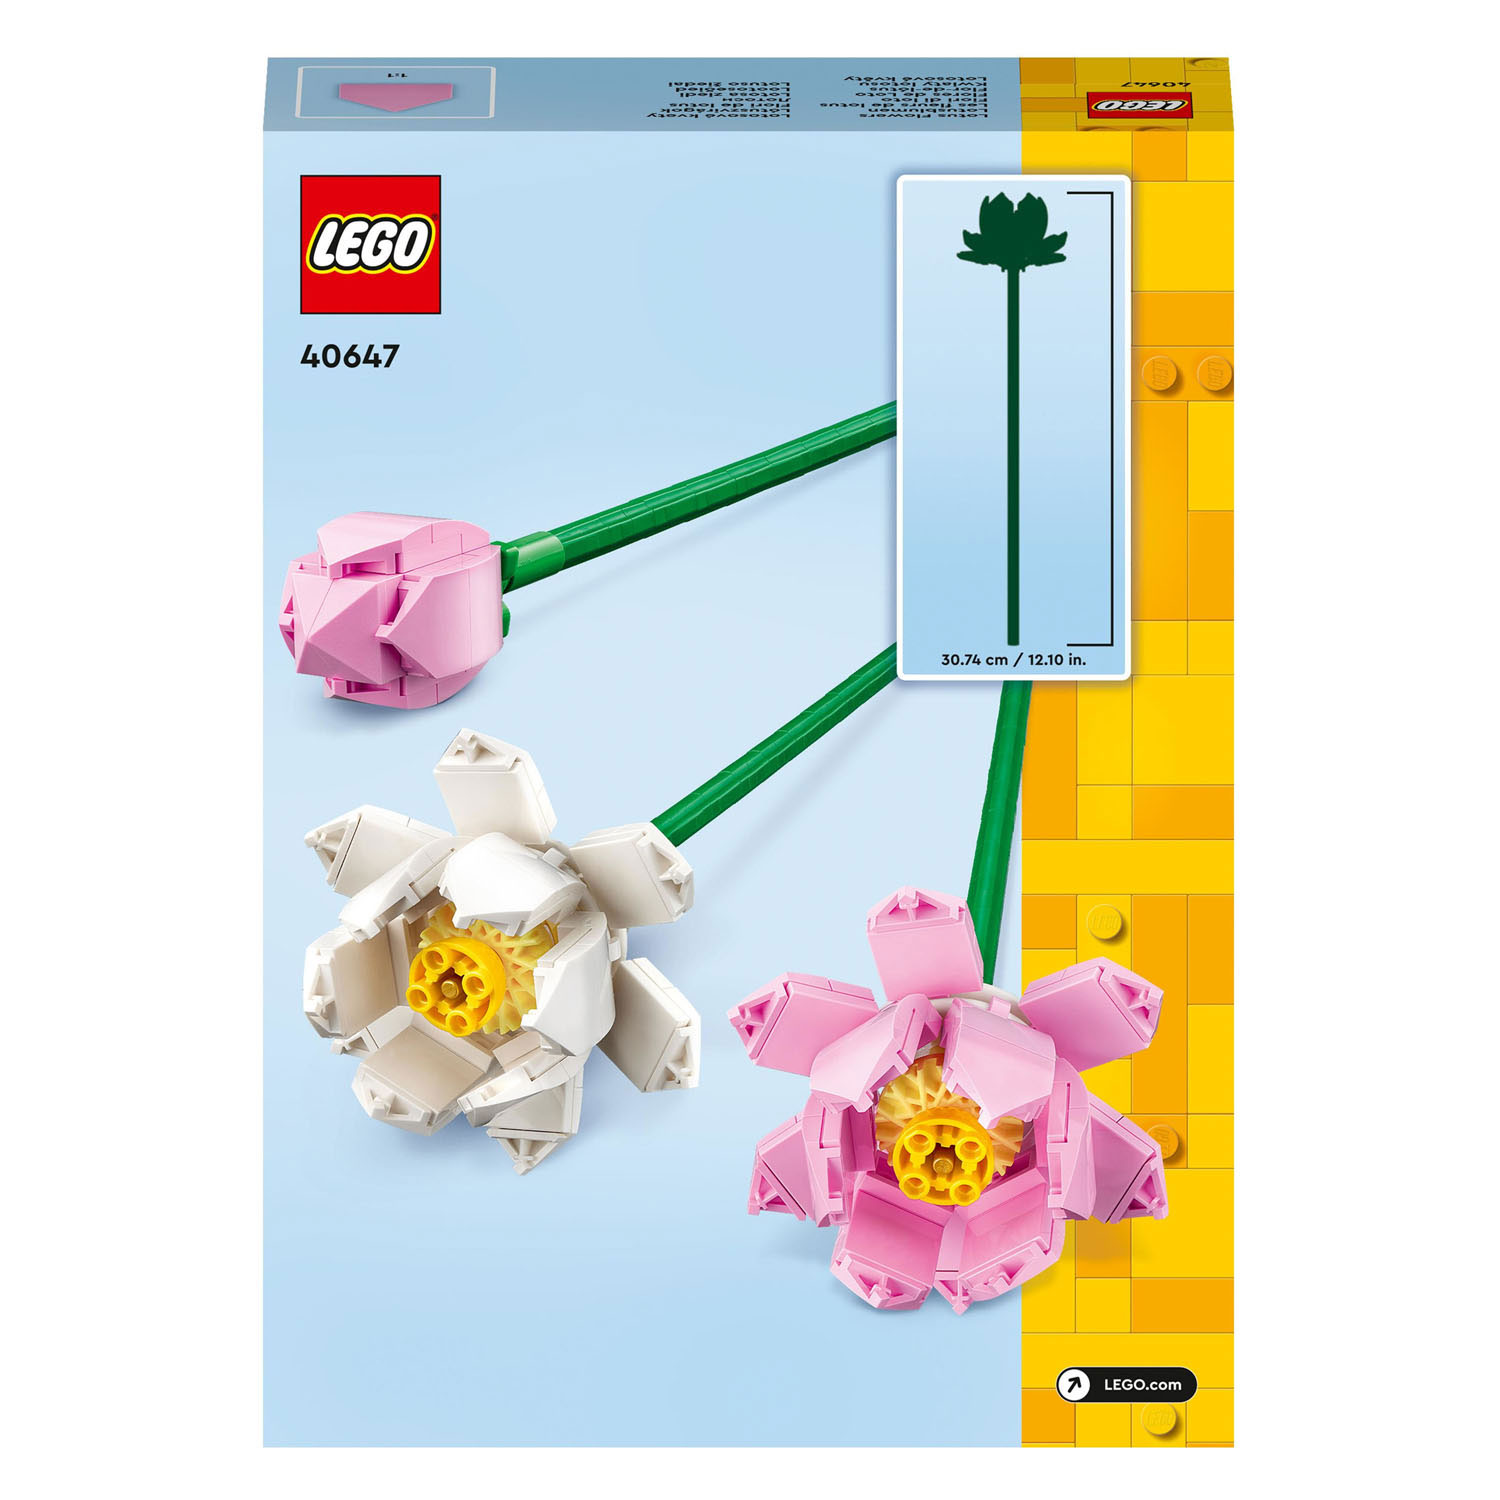 LEGO 40647 Les fleurs de lotus